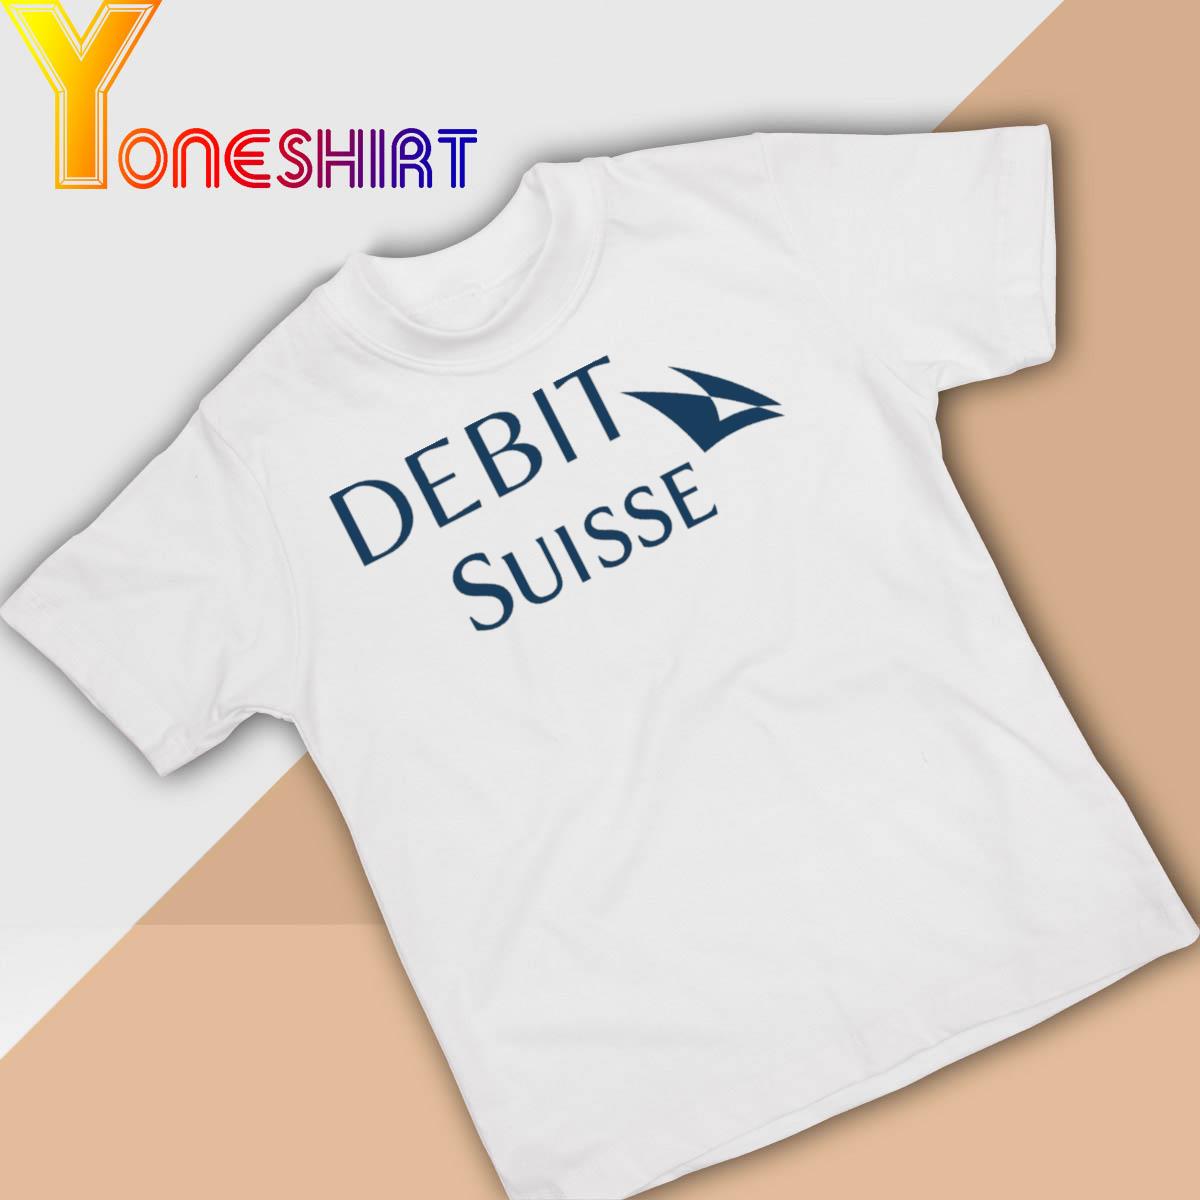 Funny Debit Suisse shirt